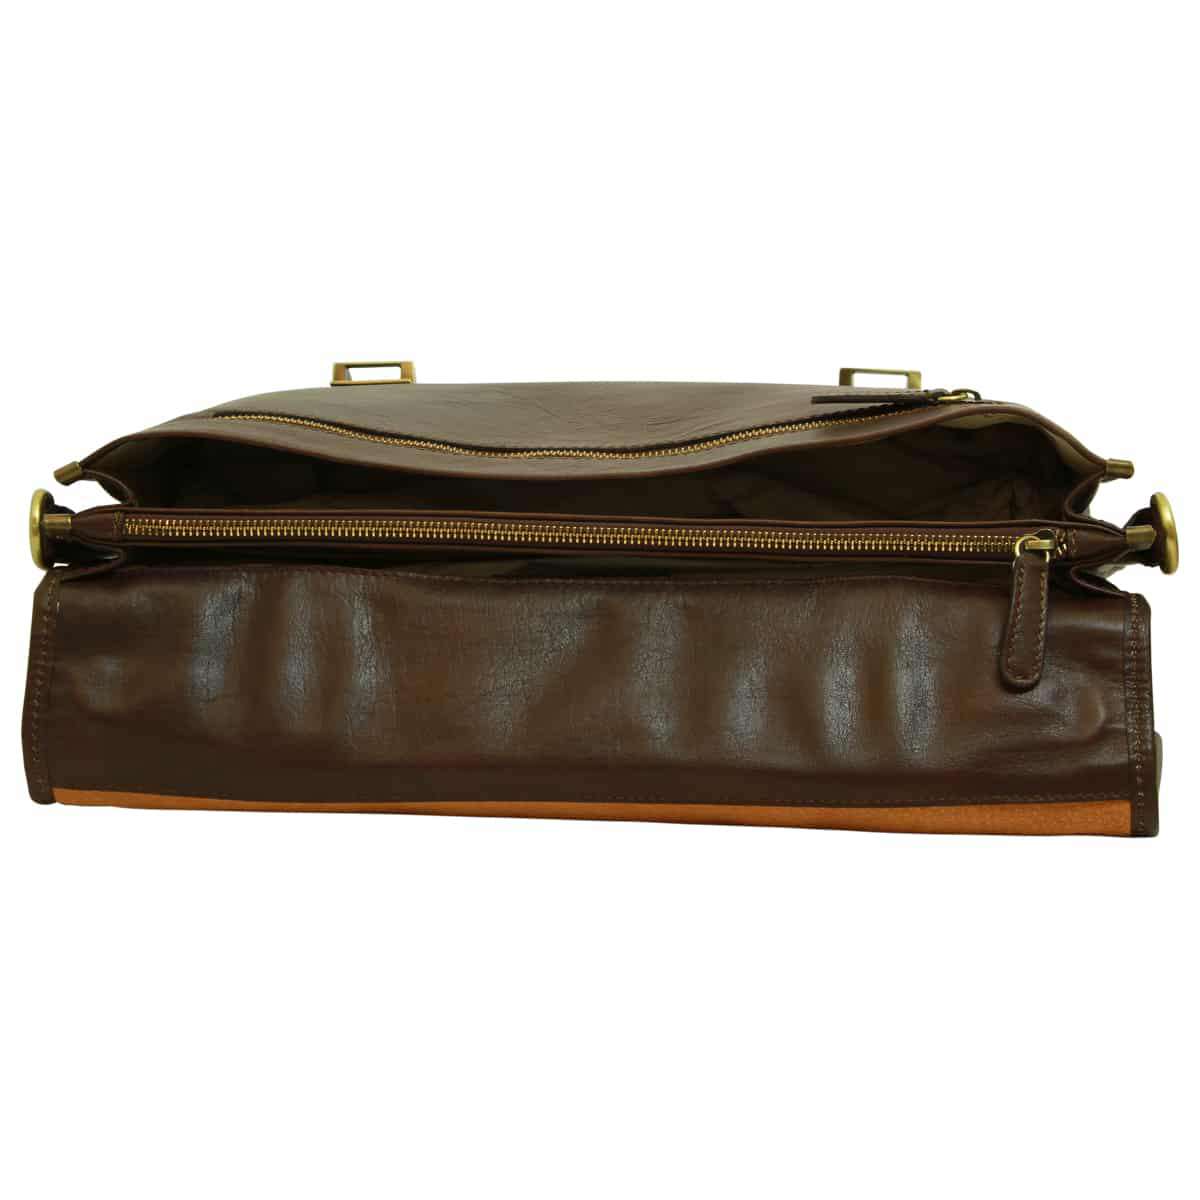 Soft Calfskin Leather Briefcase with shoulder strap - Dark Brown | 030991TM UK | Old Angler Firenze